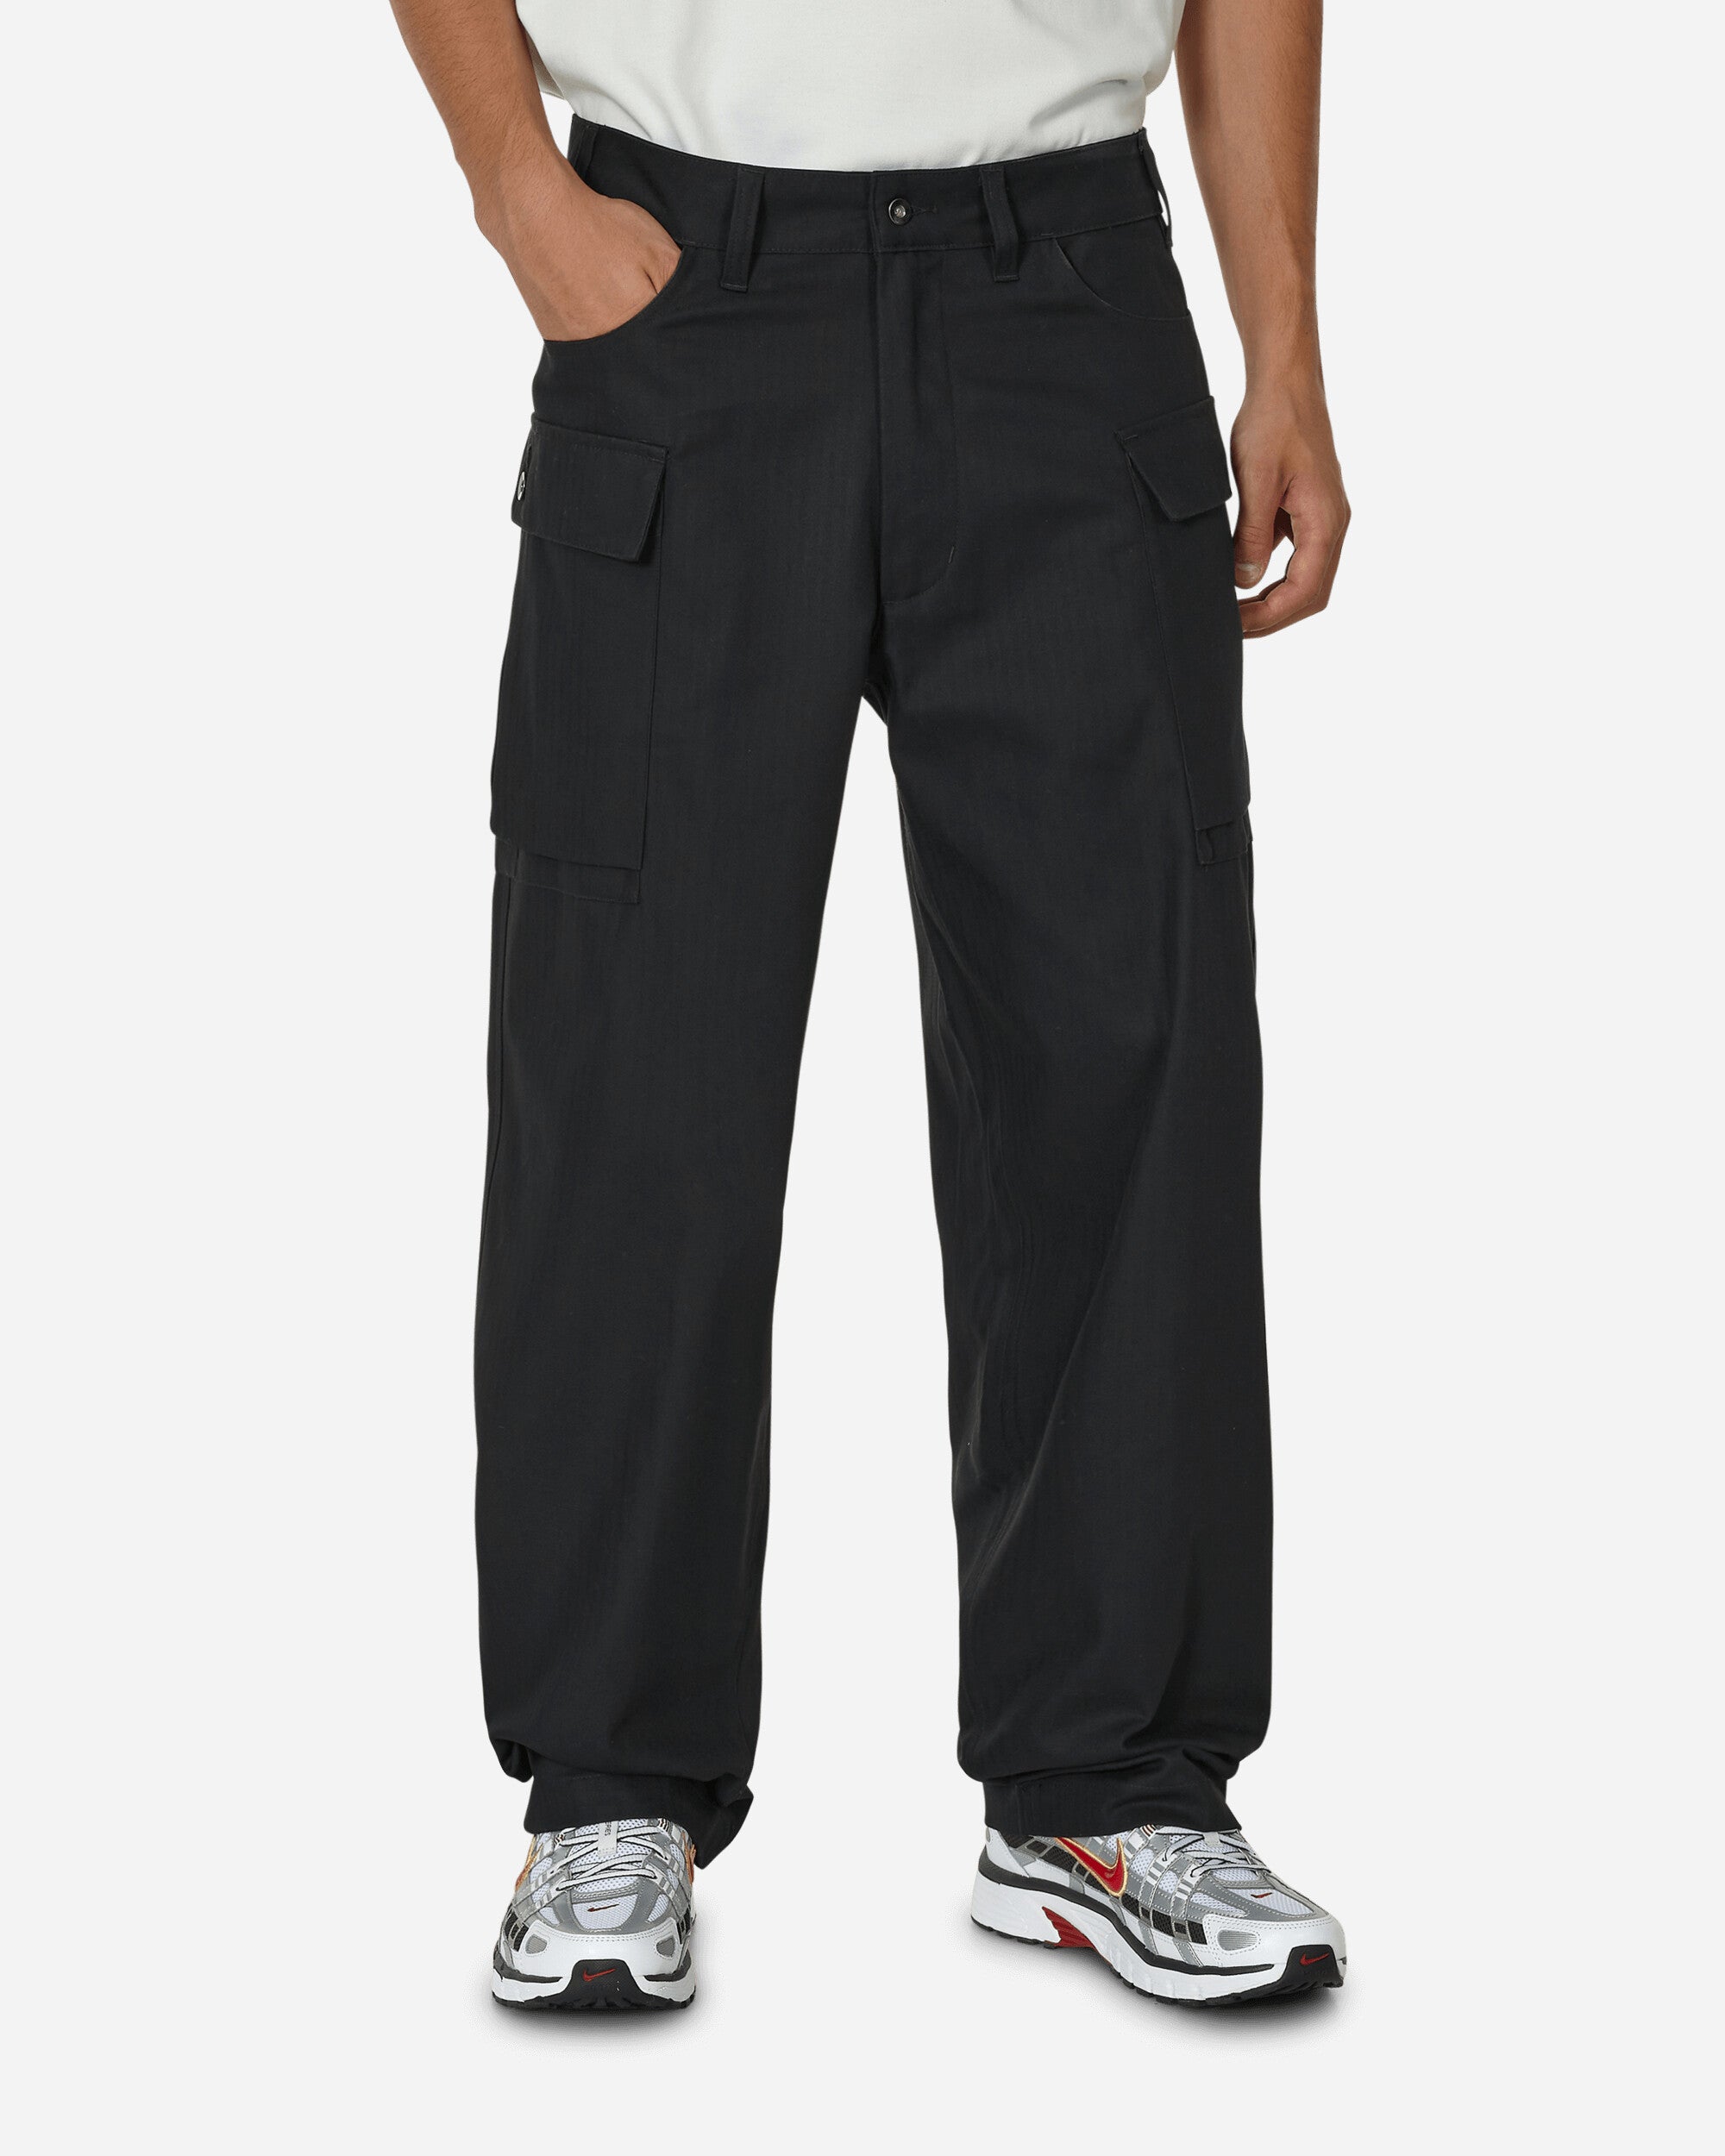 Nike Cargo Pant Black/Black Pants Sweatpants FJ0323-010